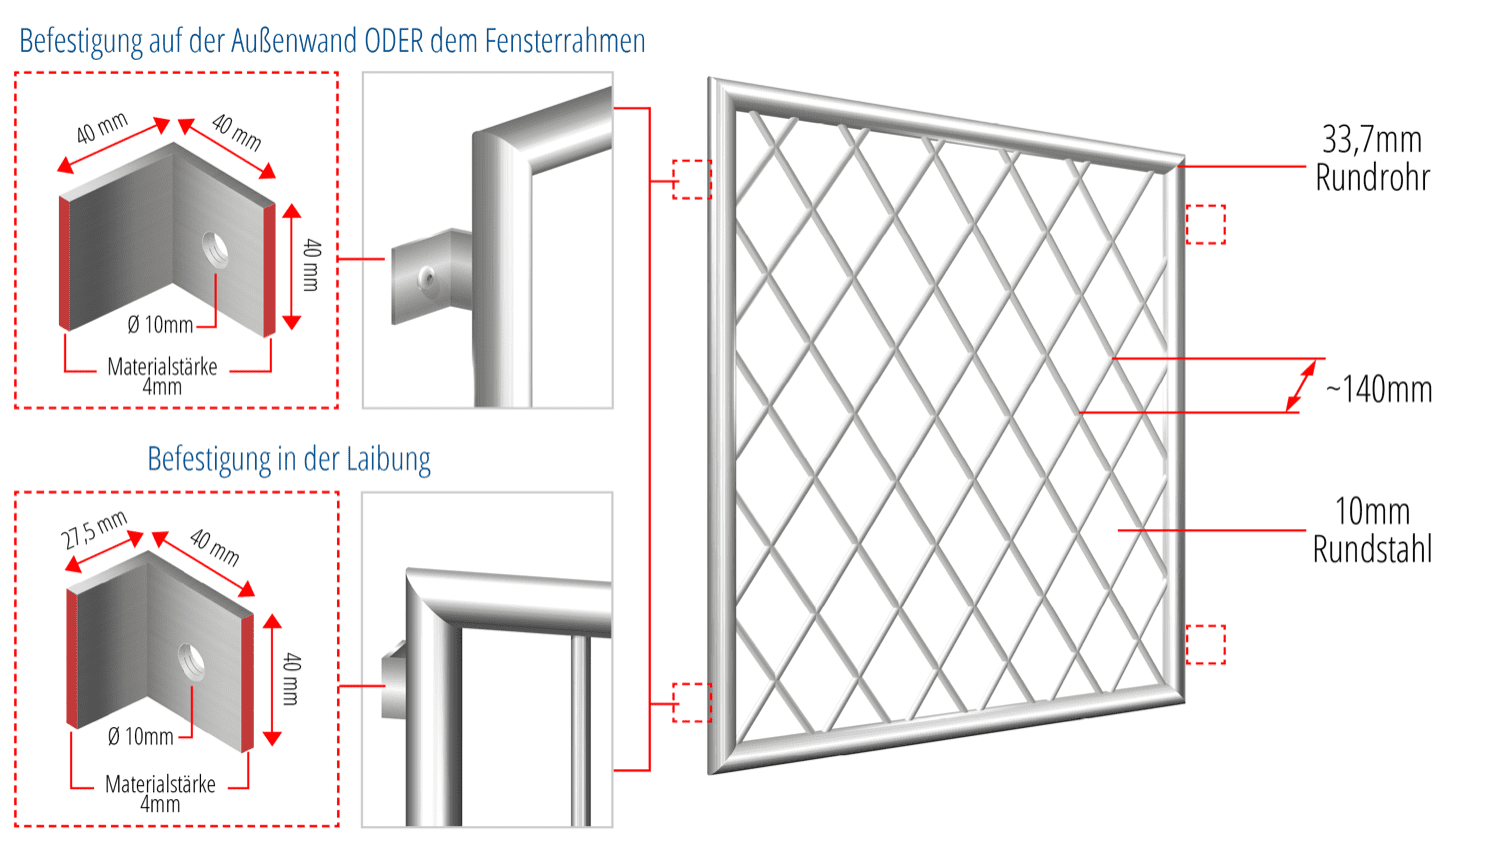 Grille de défense pour fenêtres en acier inoxydable barre ronde en forme de losange